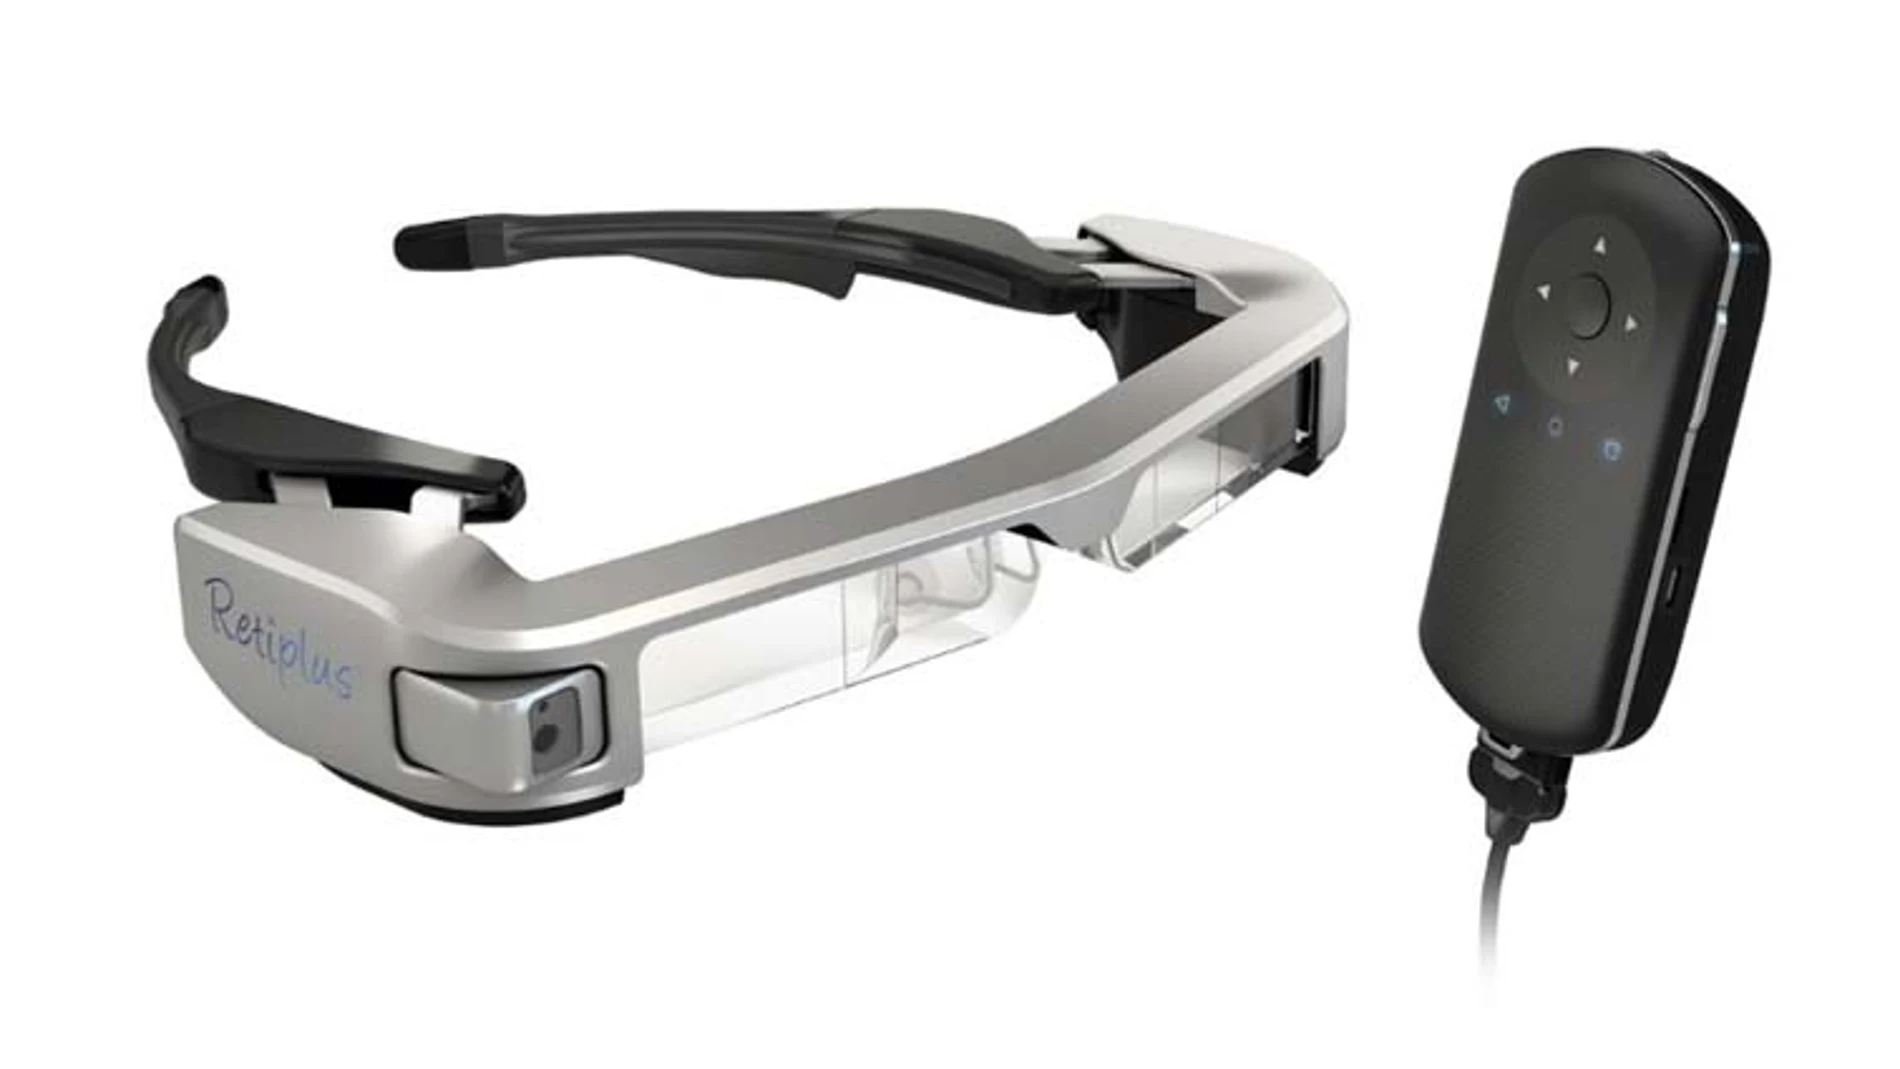 Las gafas de realidad aumentada fabricadas por Epson hacen que el paciente optimice su resto visual y siga realizando una vida normal.